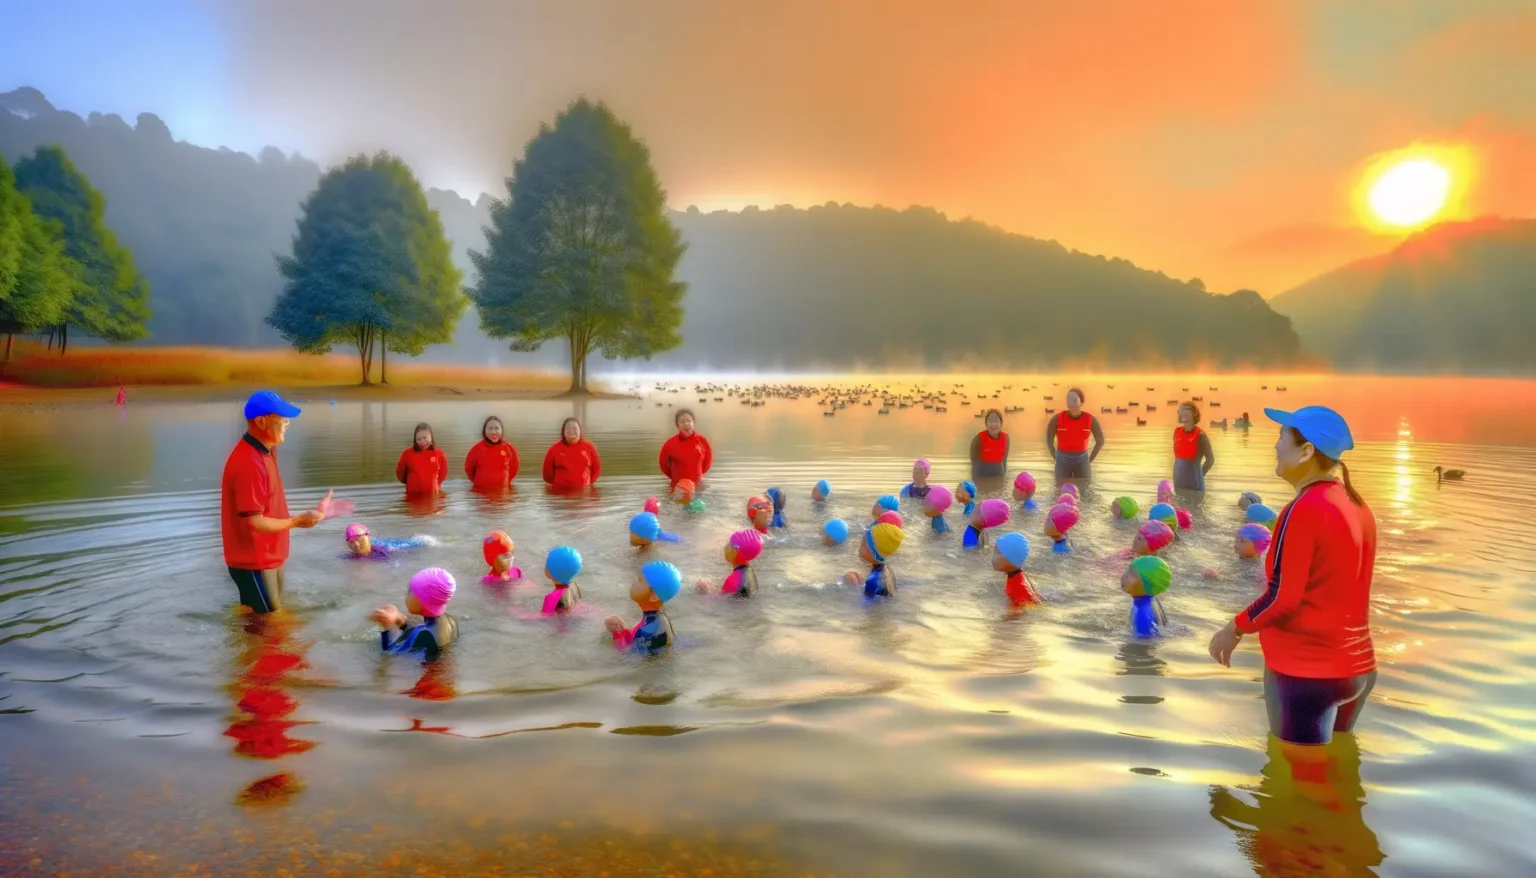 Gruppe von Menschen in roten und blauen Schwimmanzügen, die bei Sonnenaufgang im seichten Wasser eines Sees stehen. Viele von ihnen tragen bunte Schwimmkappen, während zwei Personen in blauen Kappen Anweisungen zu geben scheinen. Im Hintergrund ruhiges Wasser mit schwimmenden Enten, umgeben von Bäumen und einem nebligen, farbenfrohen Himmel.